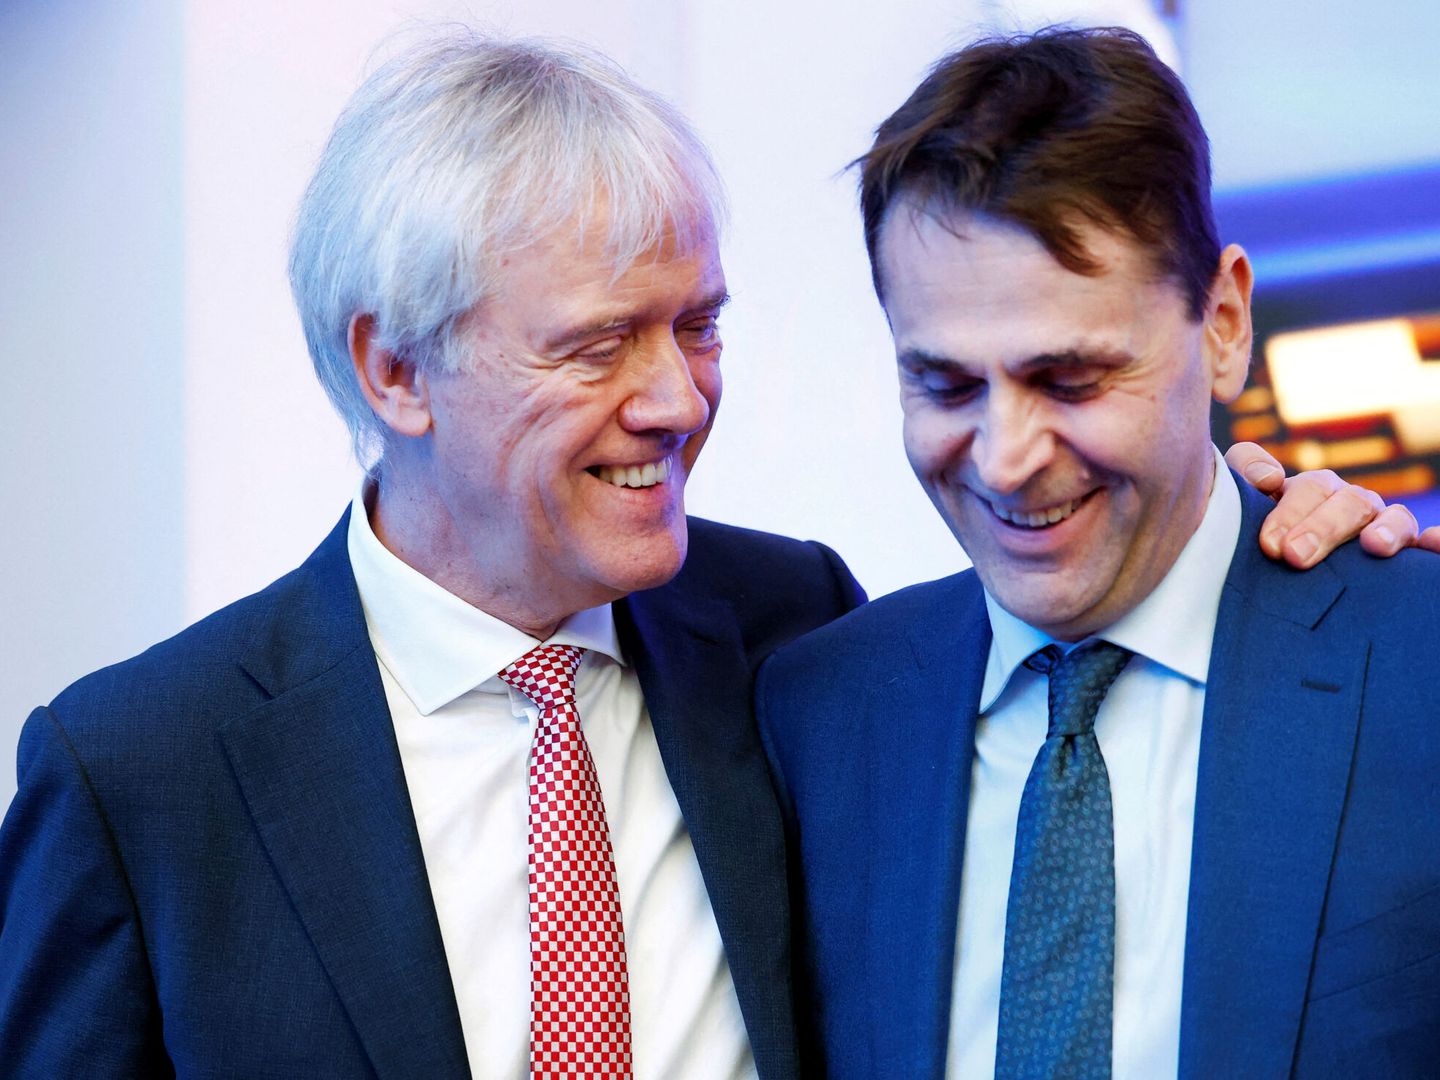 Peter Wennink, ex-CEO de ASML, abraza a Christophe Fouquet, su sucesor, en un evento a principios de año. (Reuters)